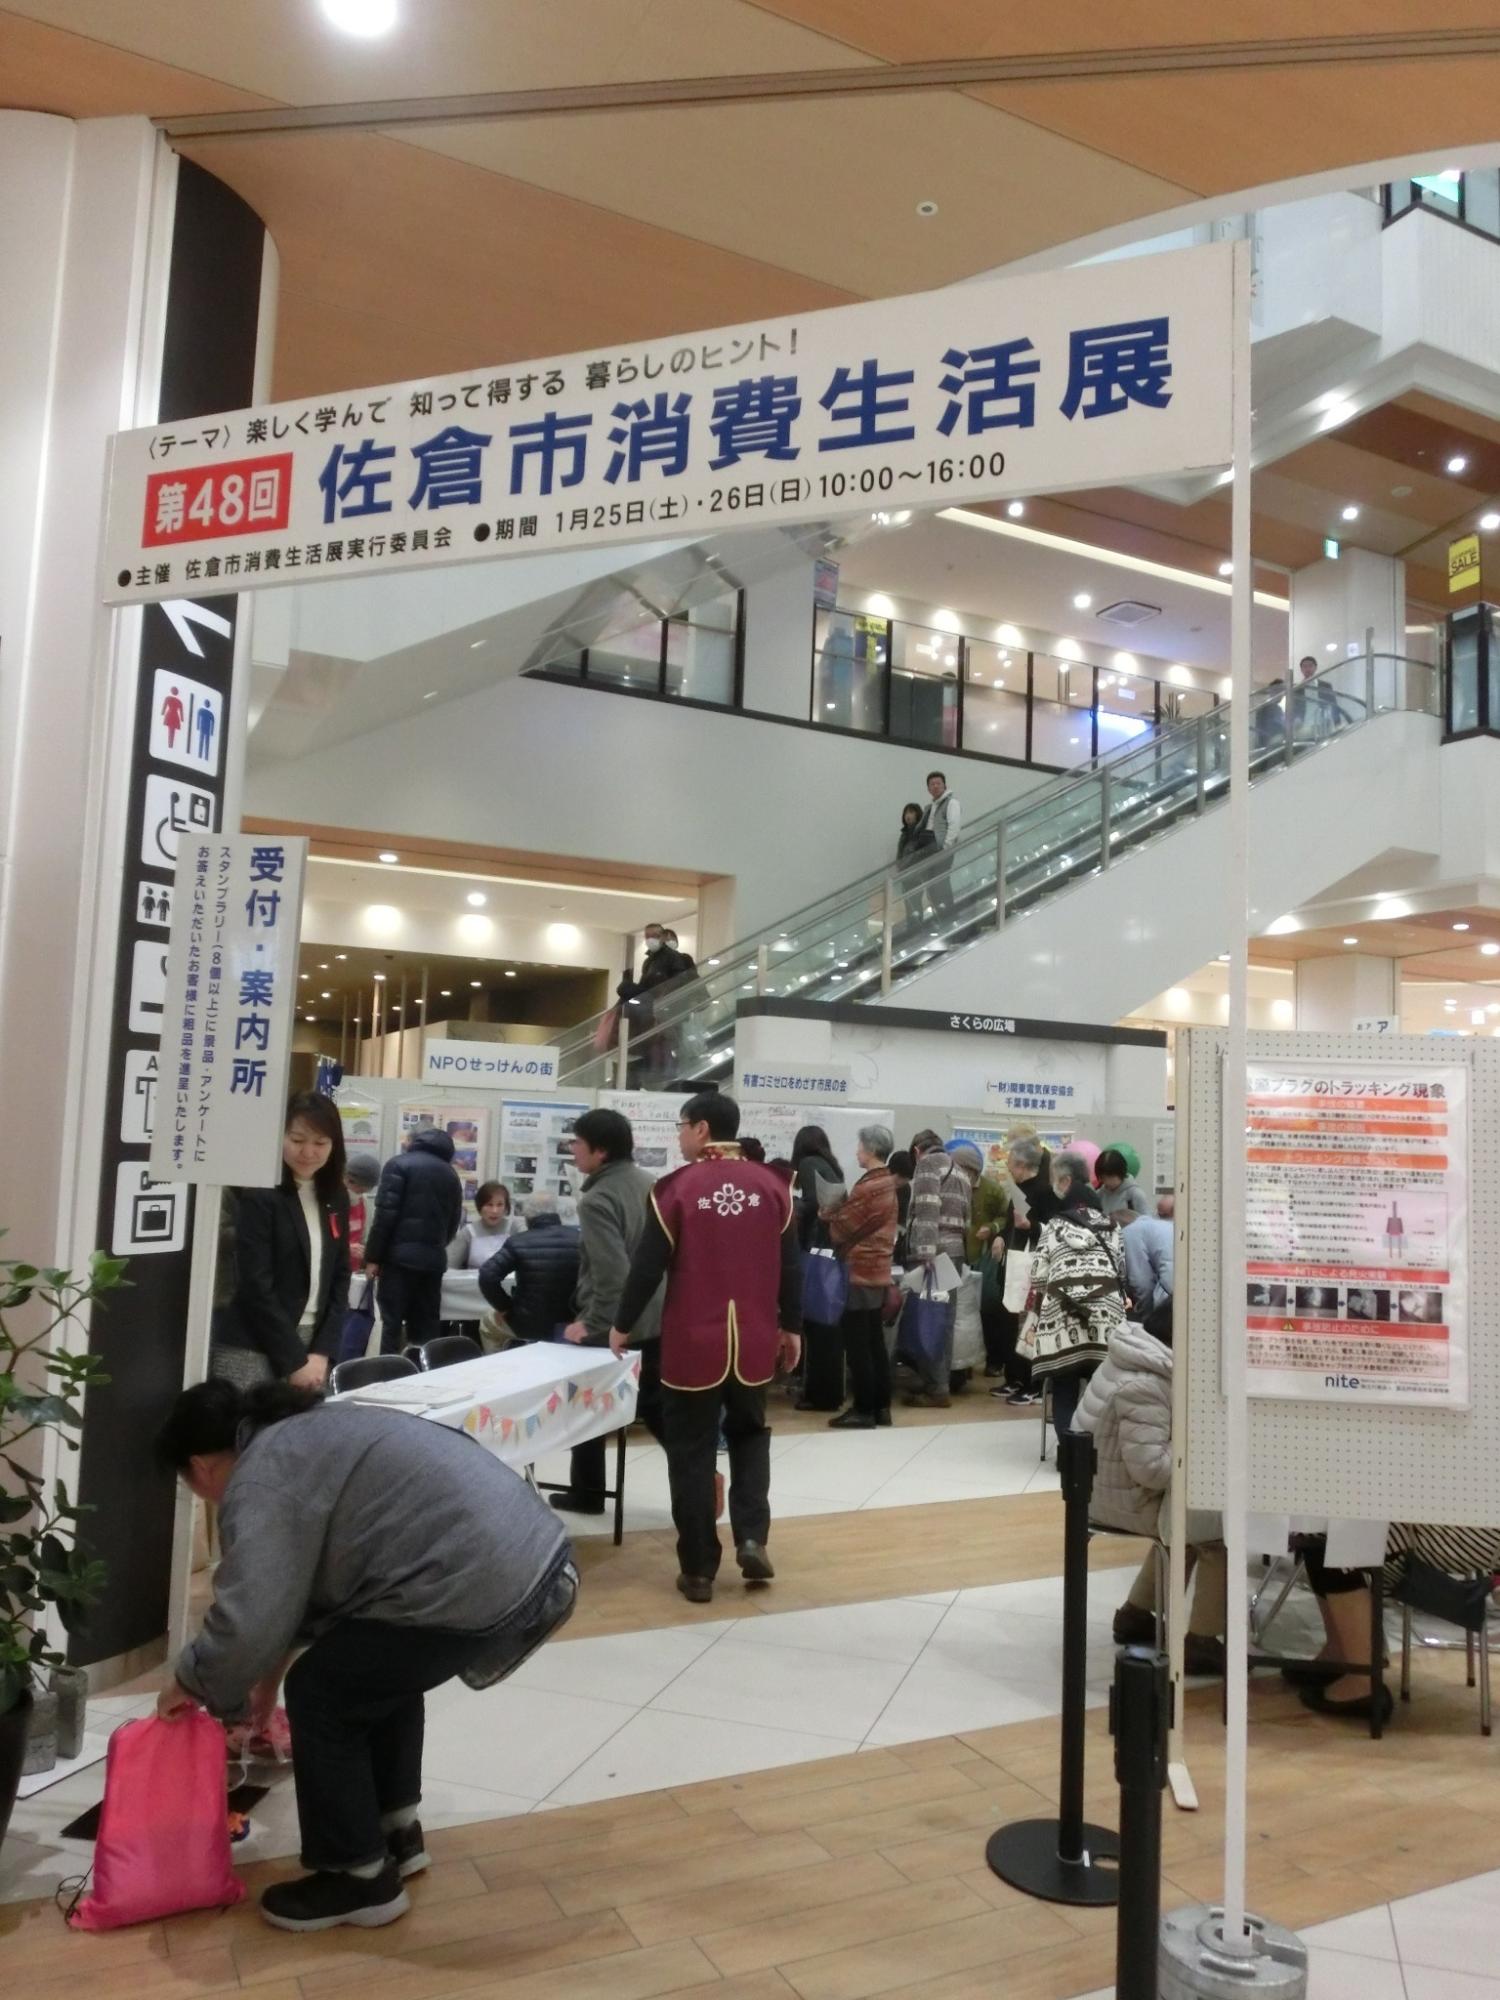 佐倉市消費生活展が開かれており、それぞれのテーマごと展示が行われ沢山のお客さんで賑わっている様子の写真